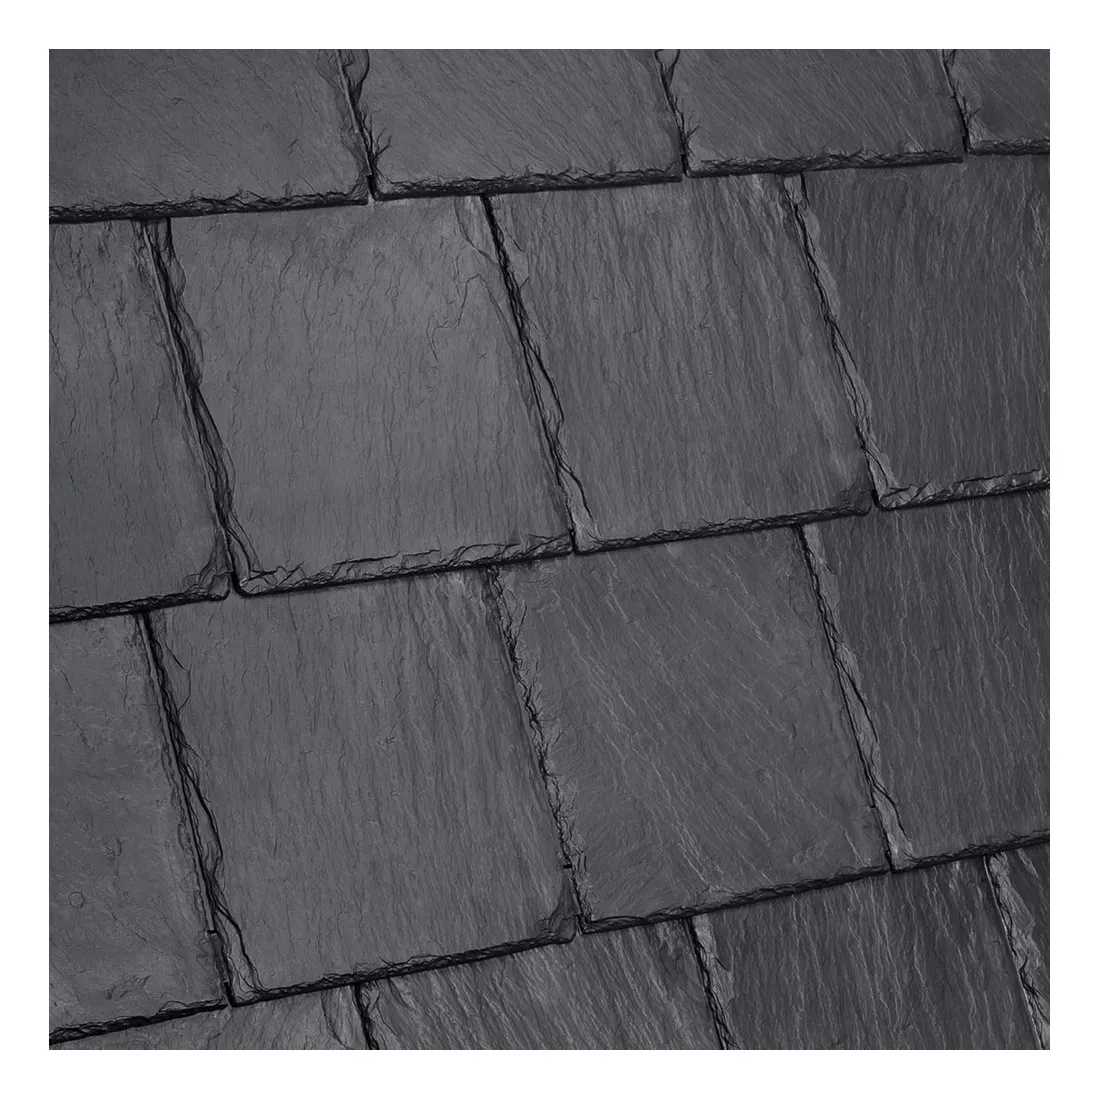 काले और ग्रे आउटडोर प्राकृतिक पत्थर विभाजन स्लेट की छत टाइल काले स्लेट स्ट्रिप्स टाइल्स छत स्लेट